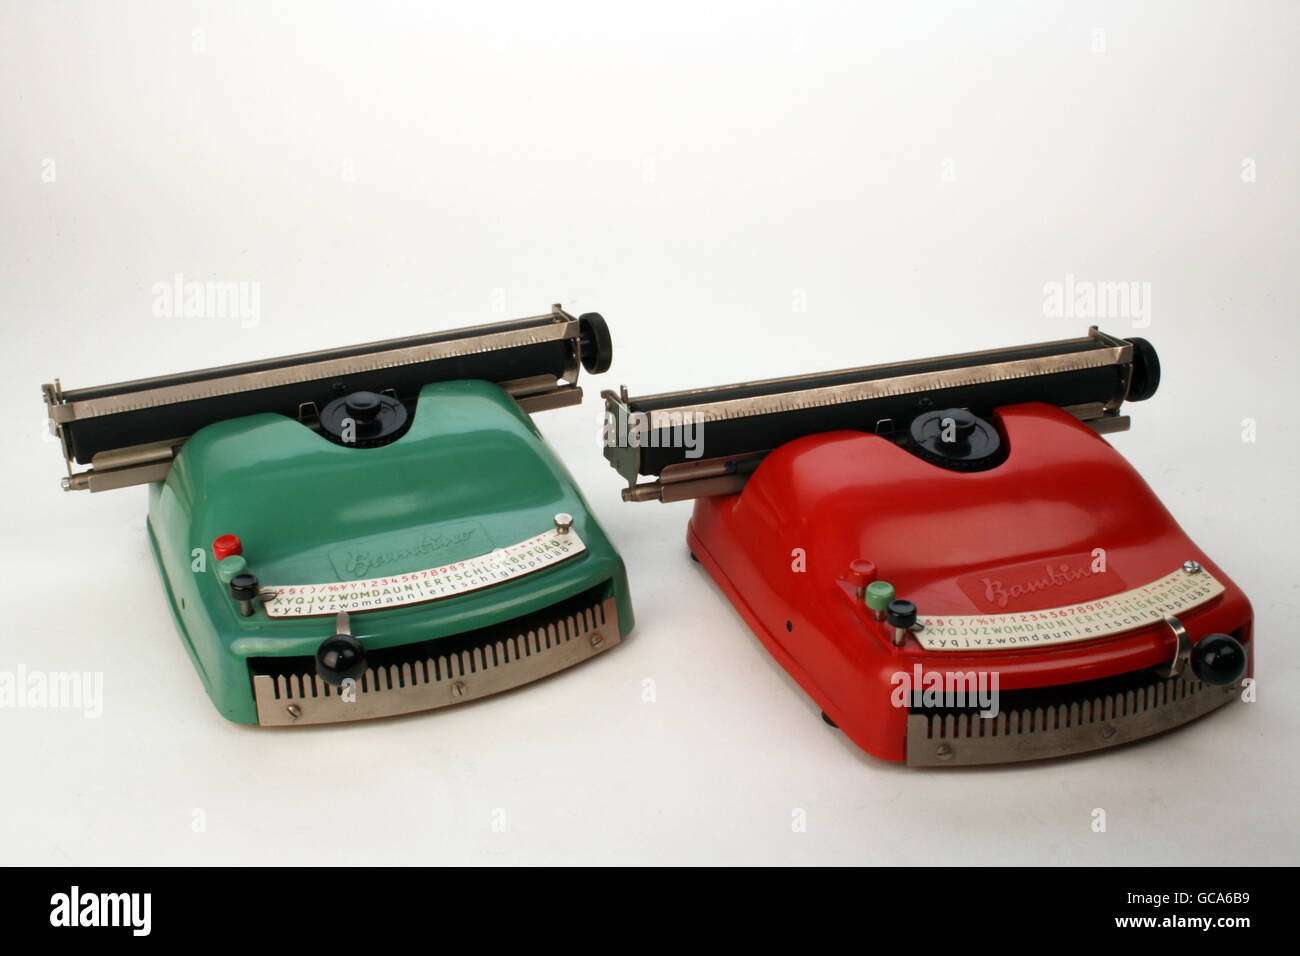 Giocattoli, macchina da scrivere per bambini 'Bambino', realizzata